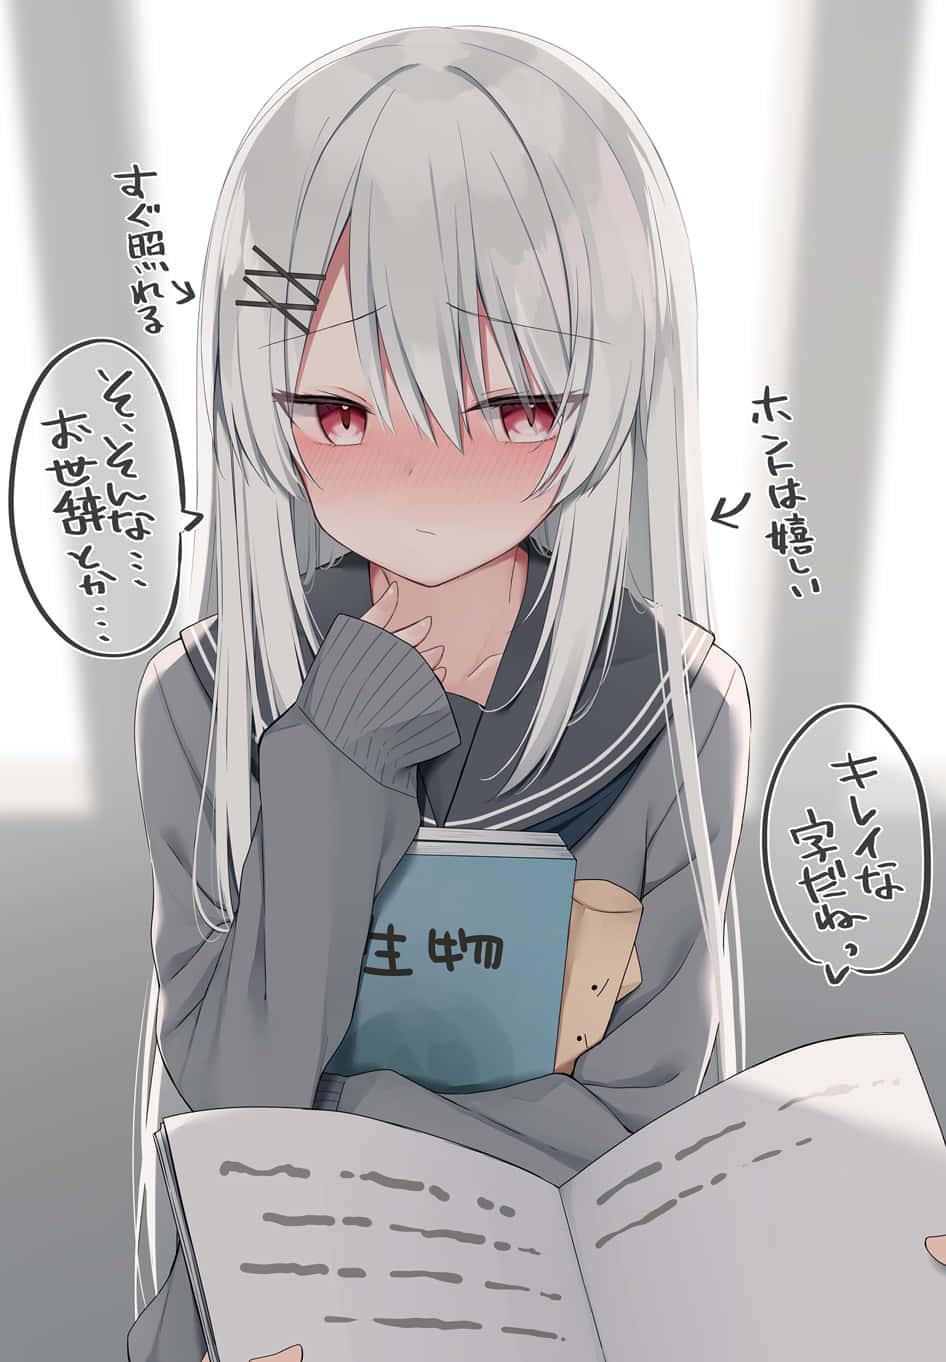 Blushing Anime Girl Reading Book Wallpaper